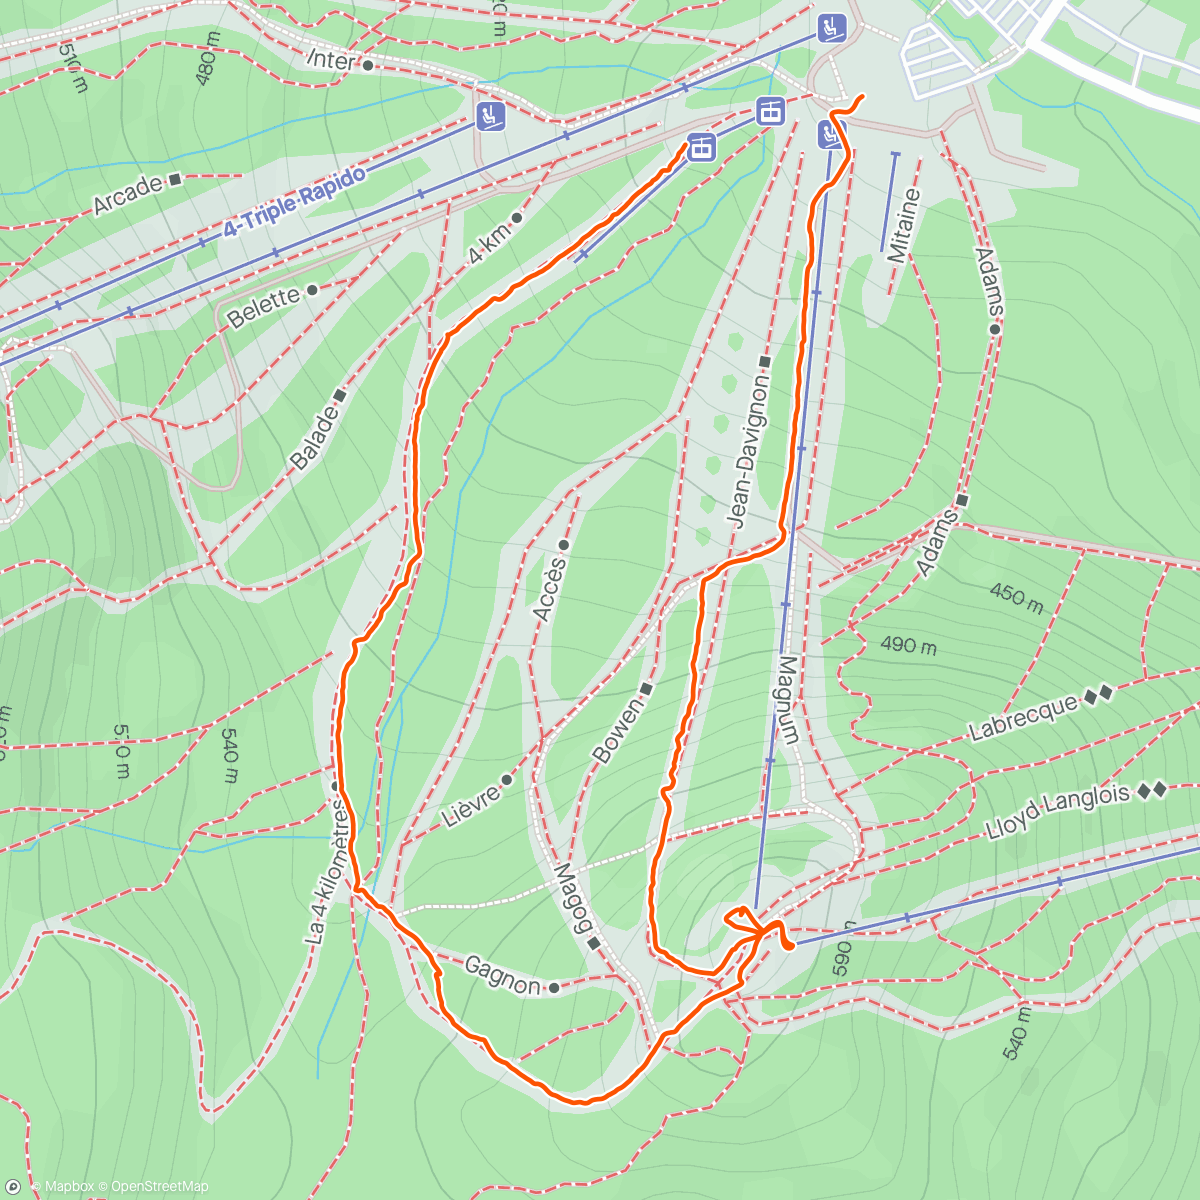 「Montée au Mont Giroux」活動的地圖